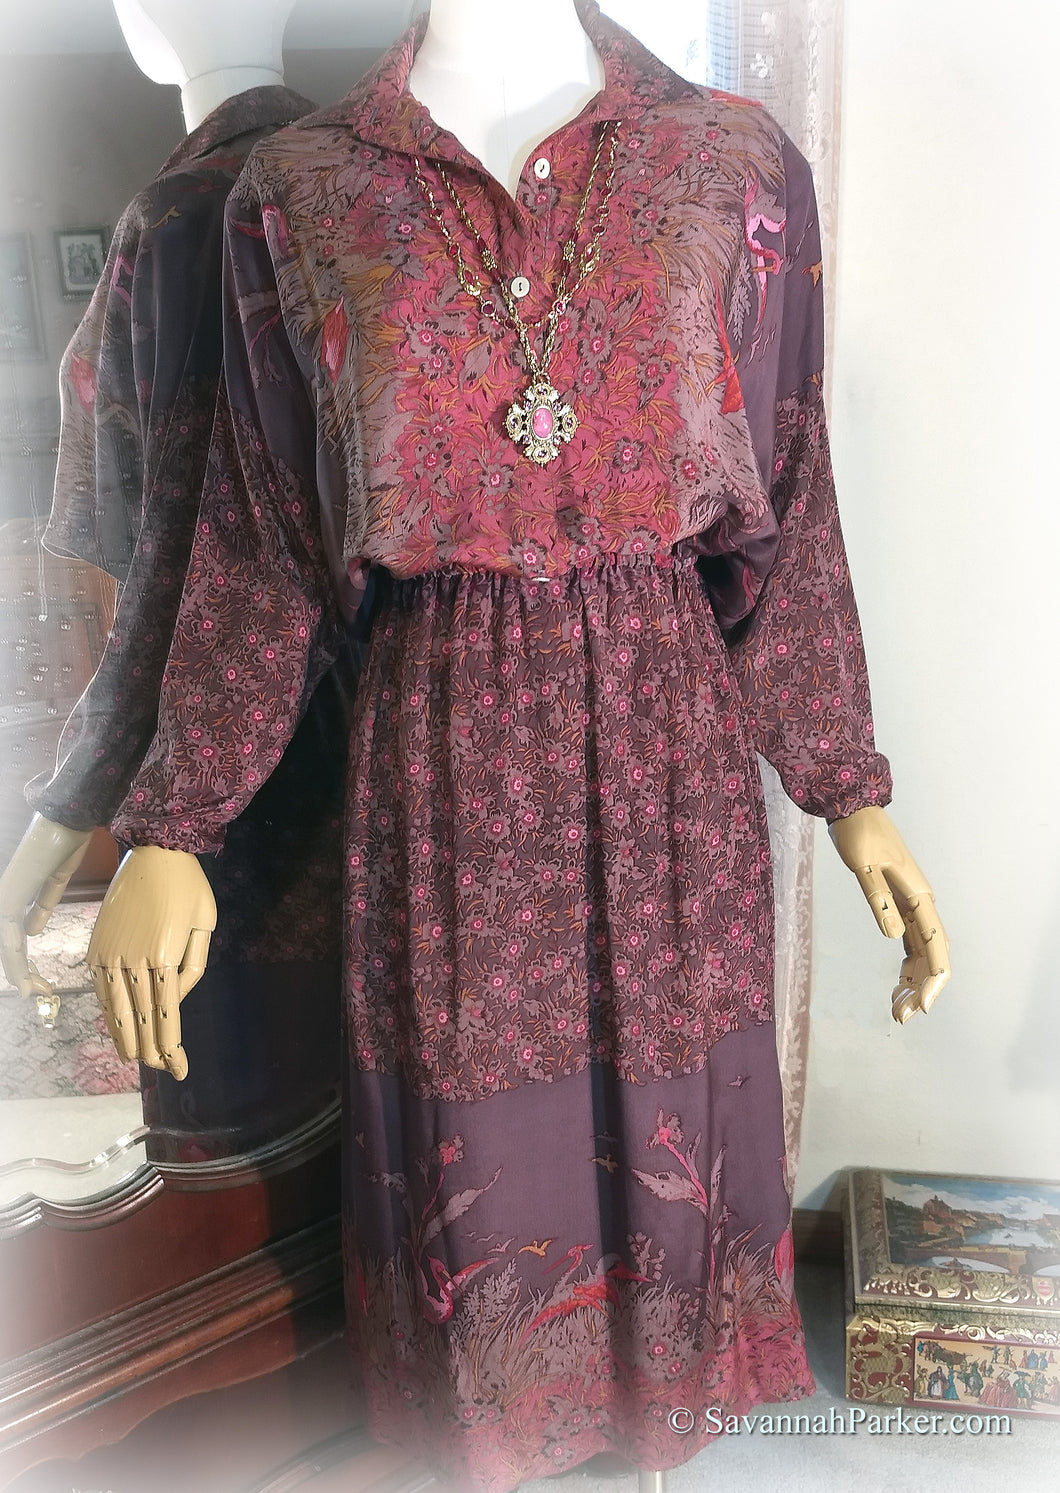 SOLD Exquisite Vintage 1980s Pure Silk Boho Border Print Dress - Carole Little/St Tropez West - Gorgeous Mauve Rose Pink Purples Silk Crepe